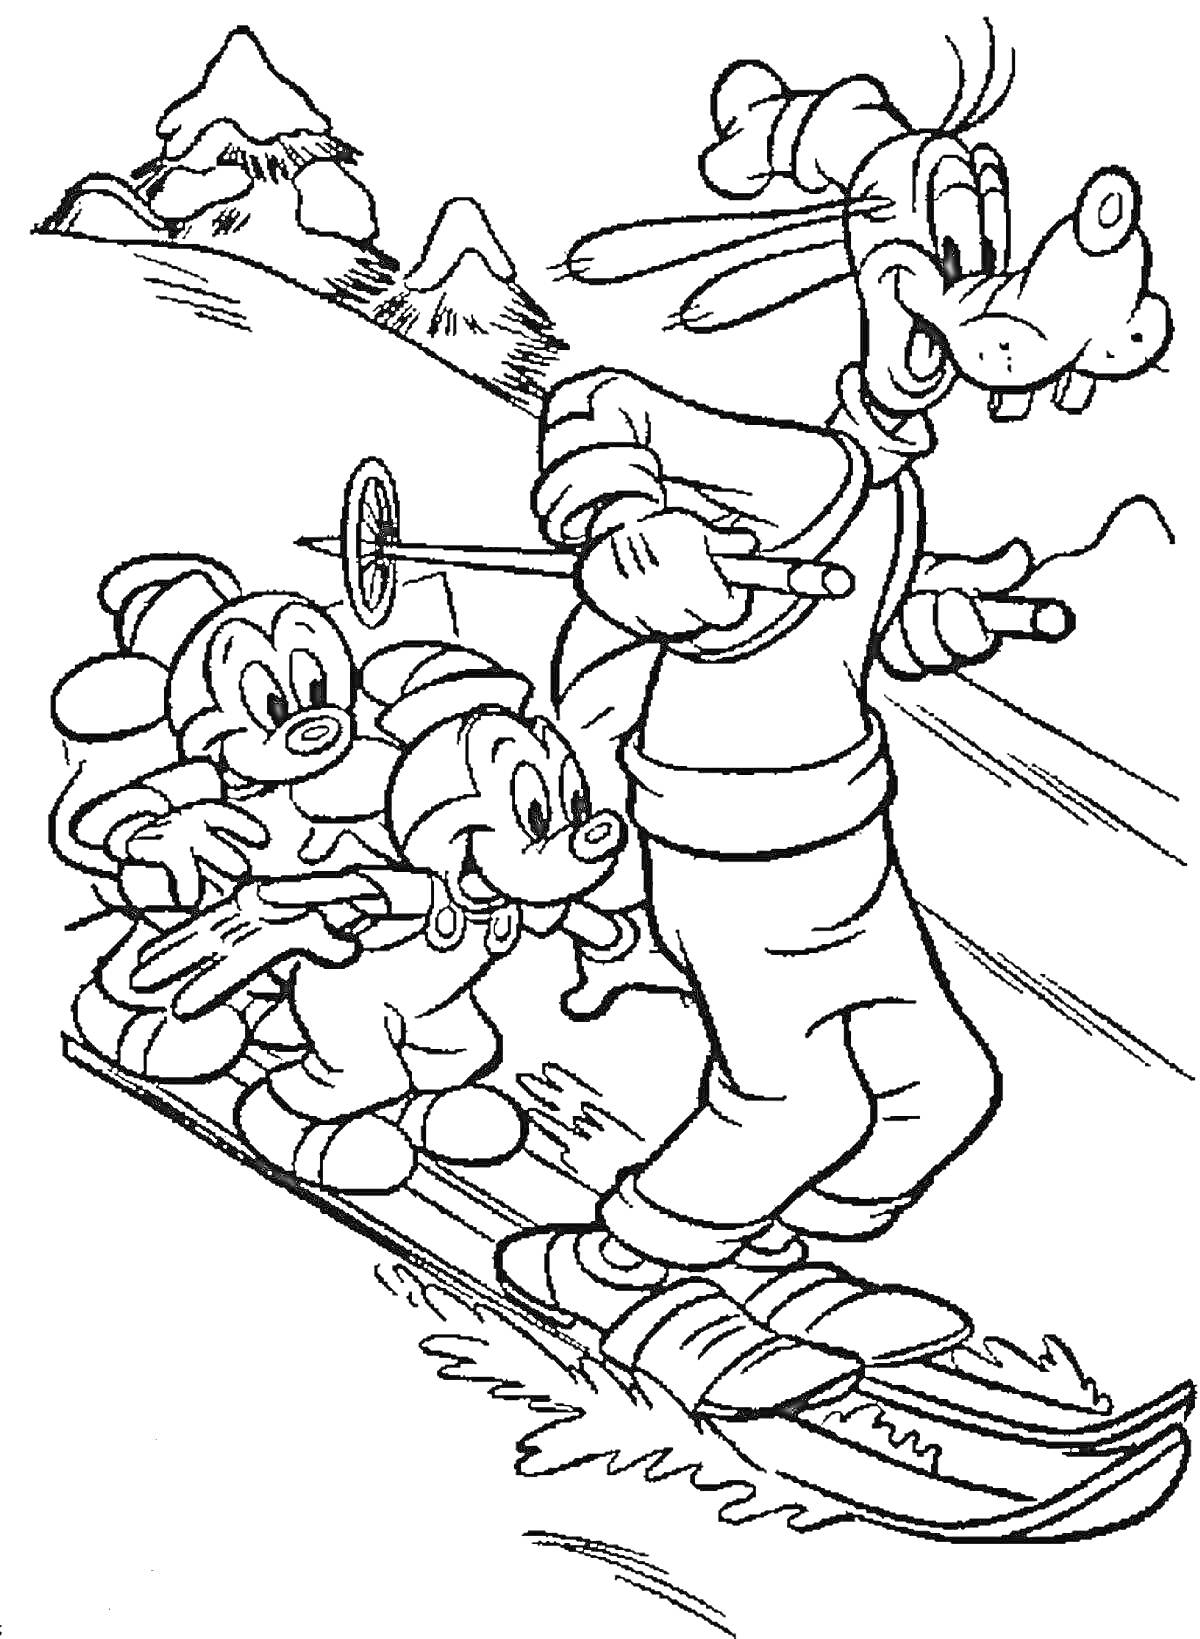 Гуфи и его друзья катаются на лыжах